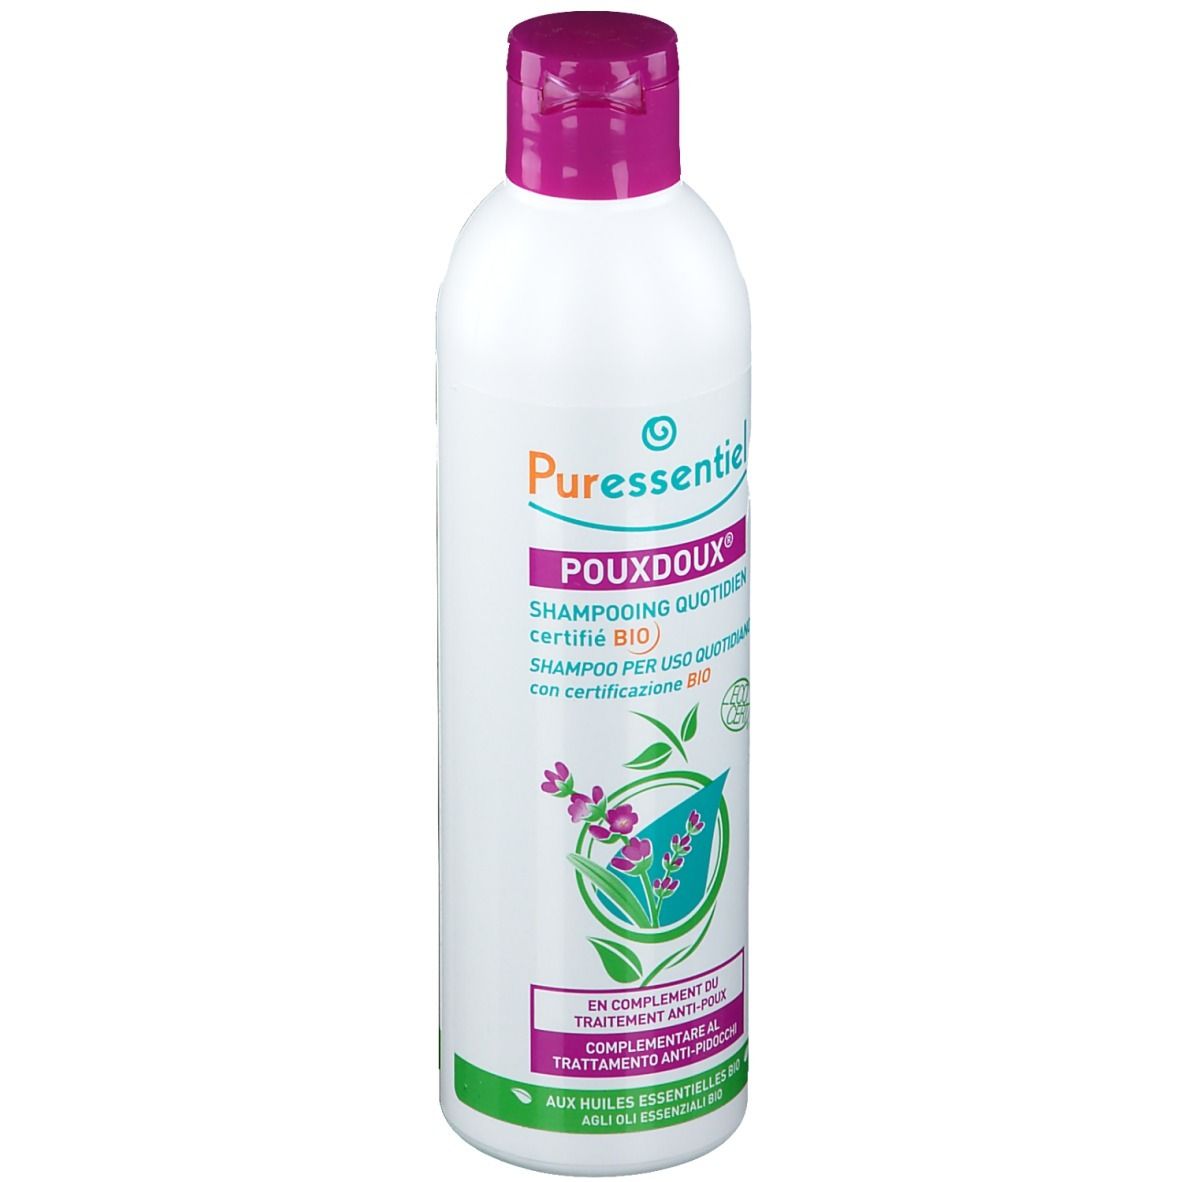 Puressentiel Pouxdoux® Shampoo